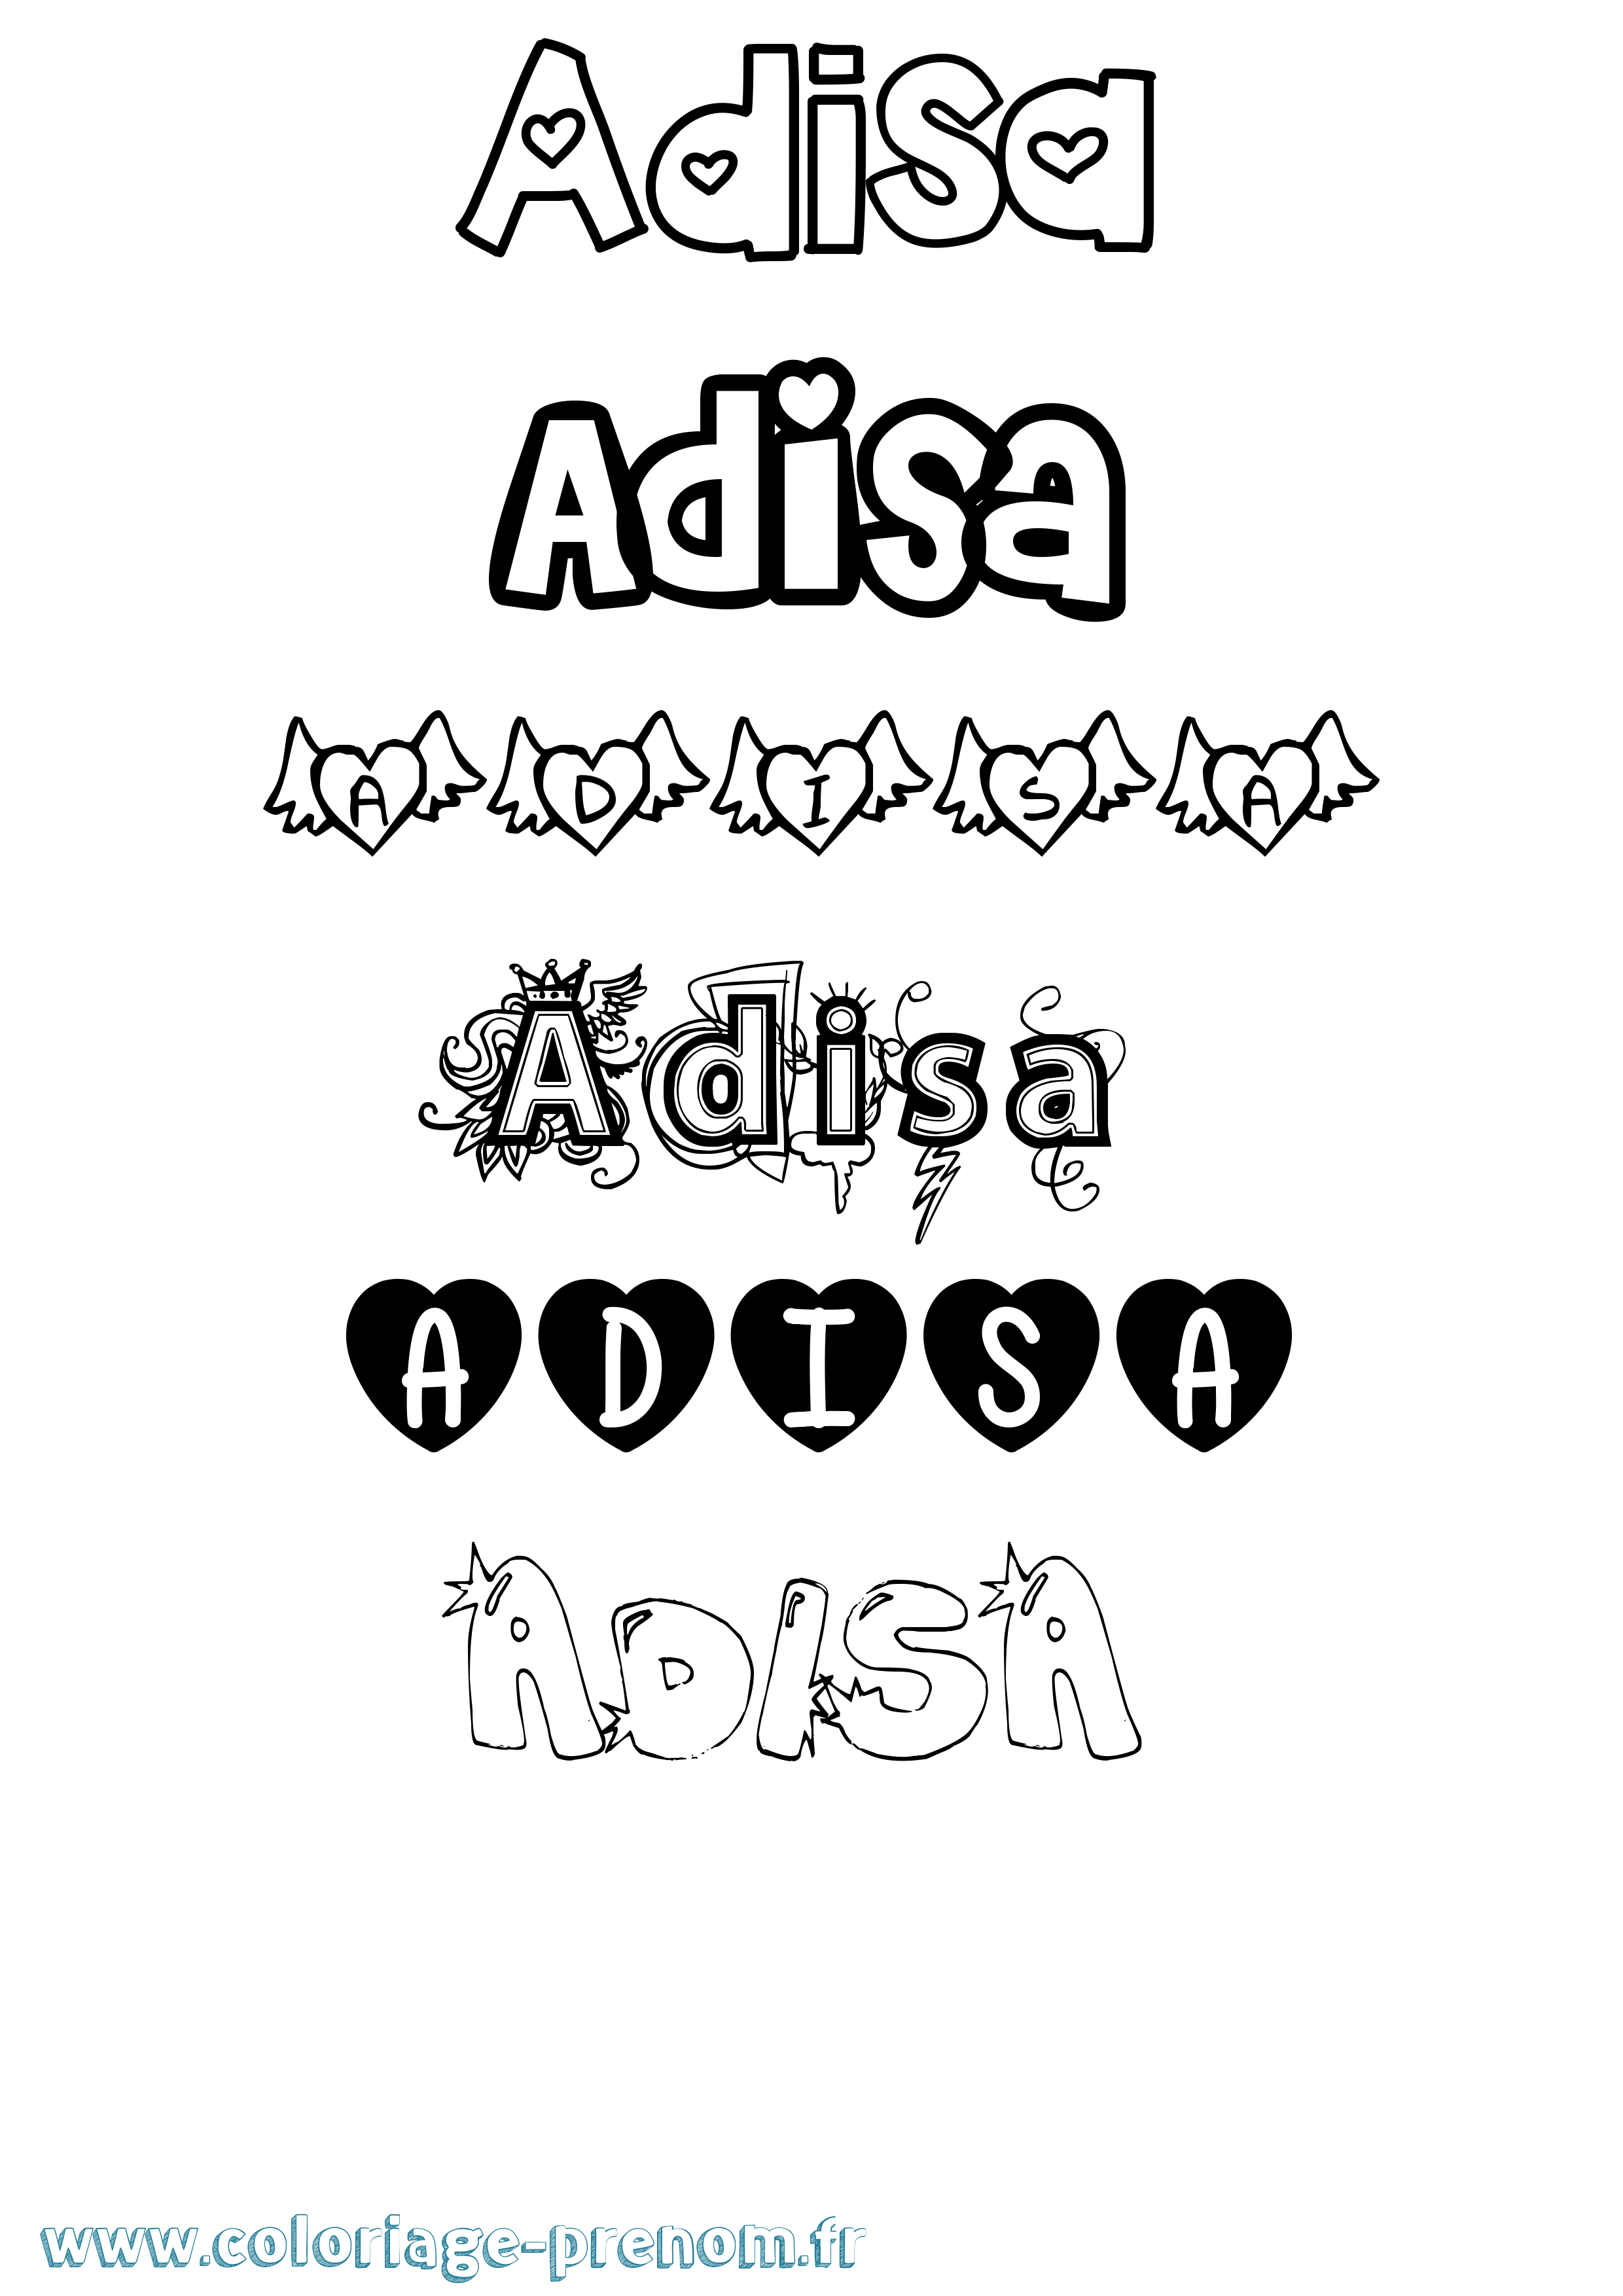 Coloriage prénom Adisa Girly